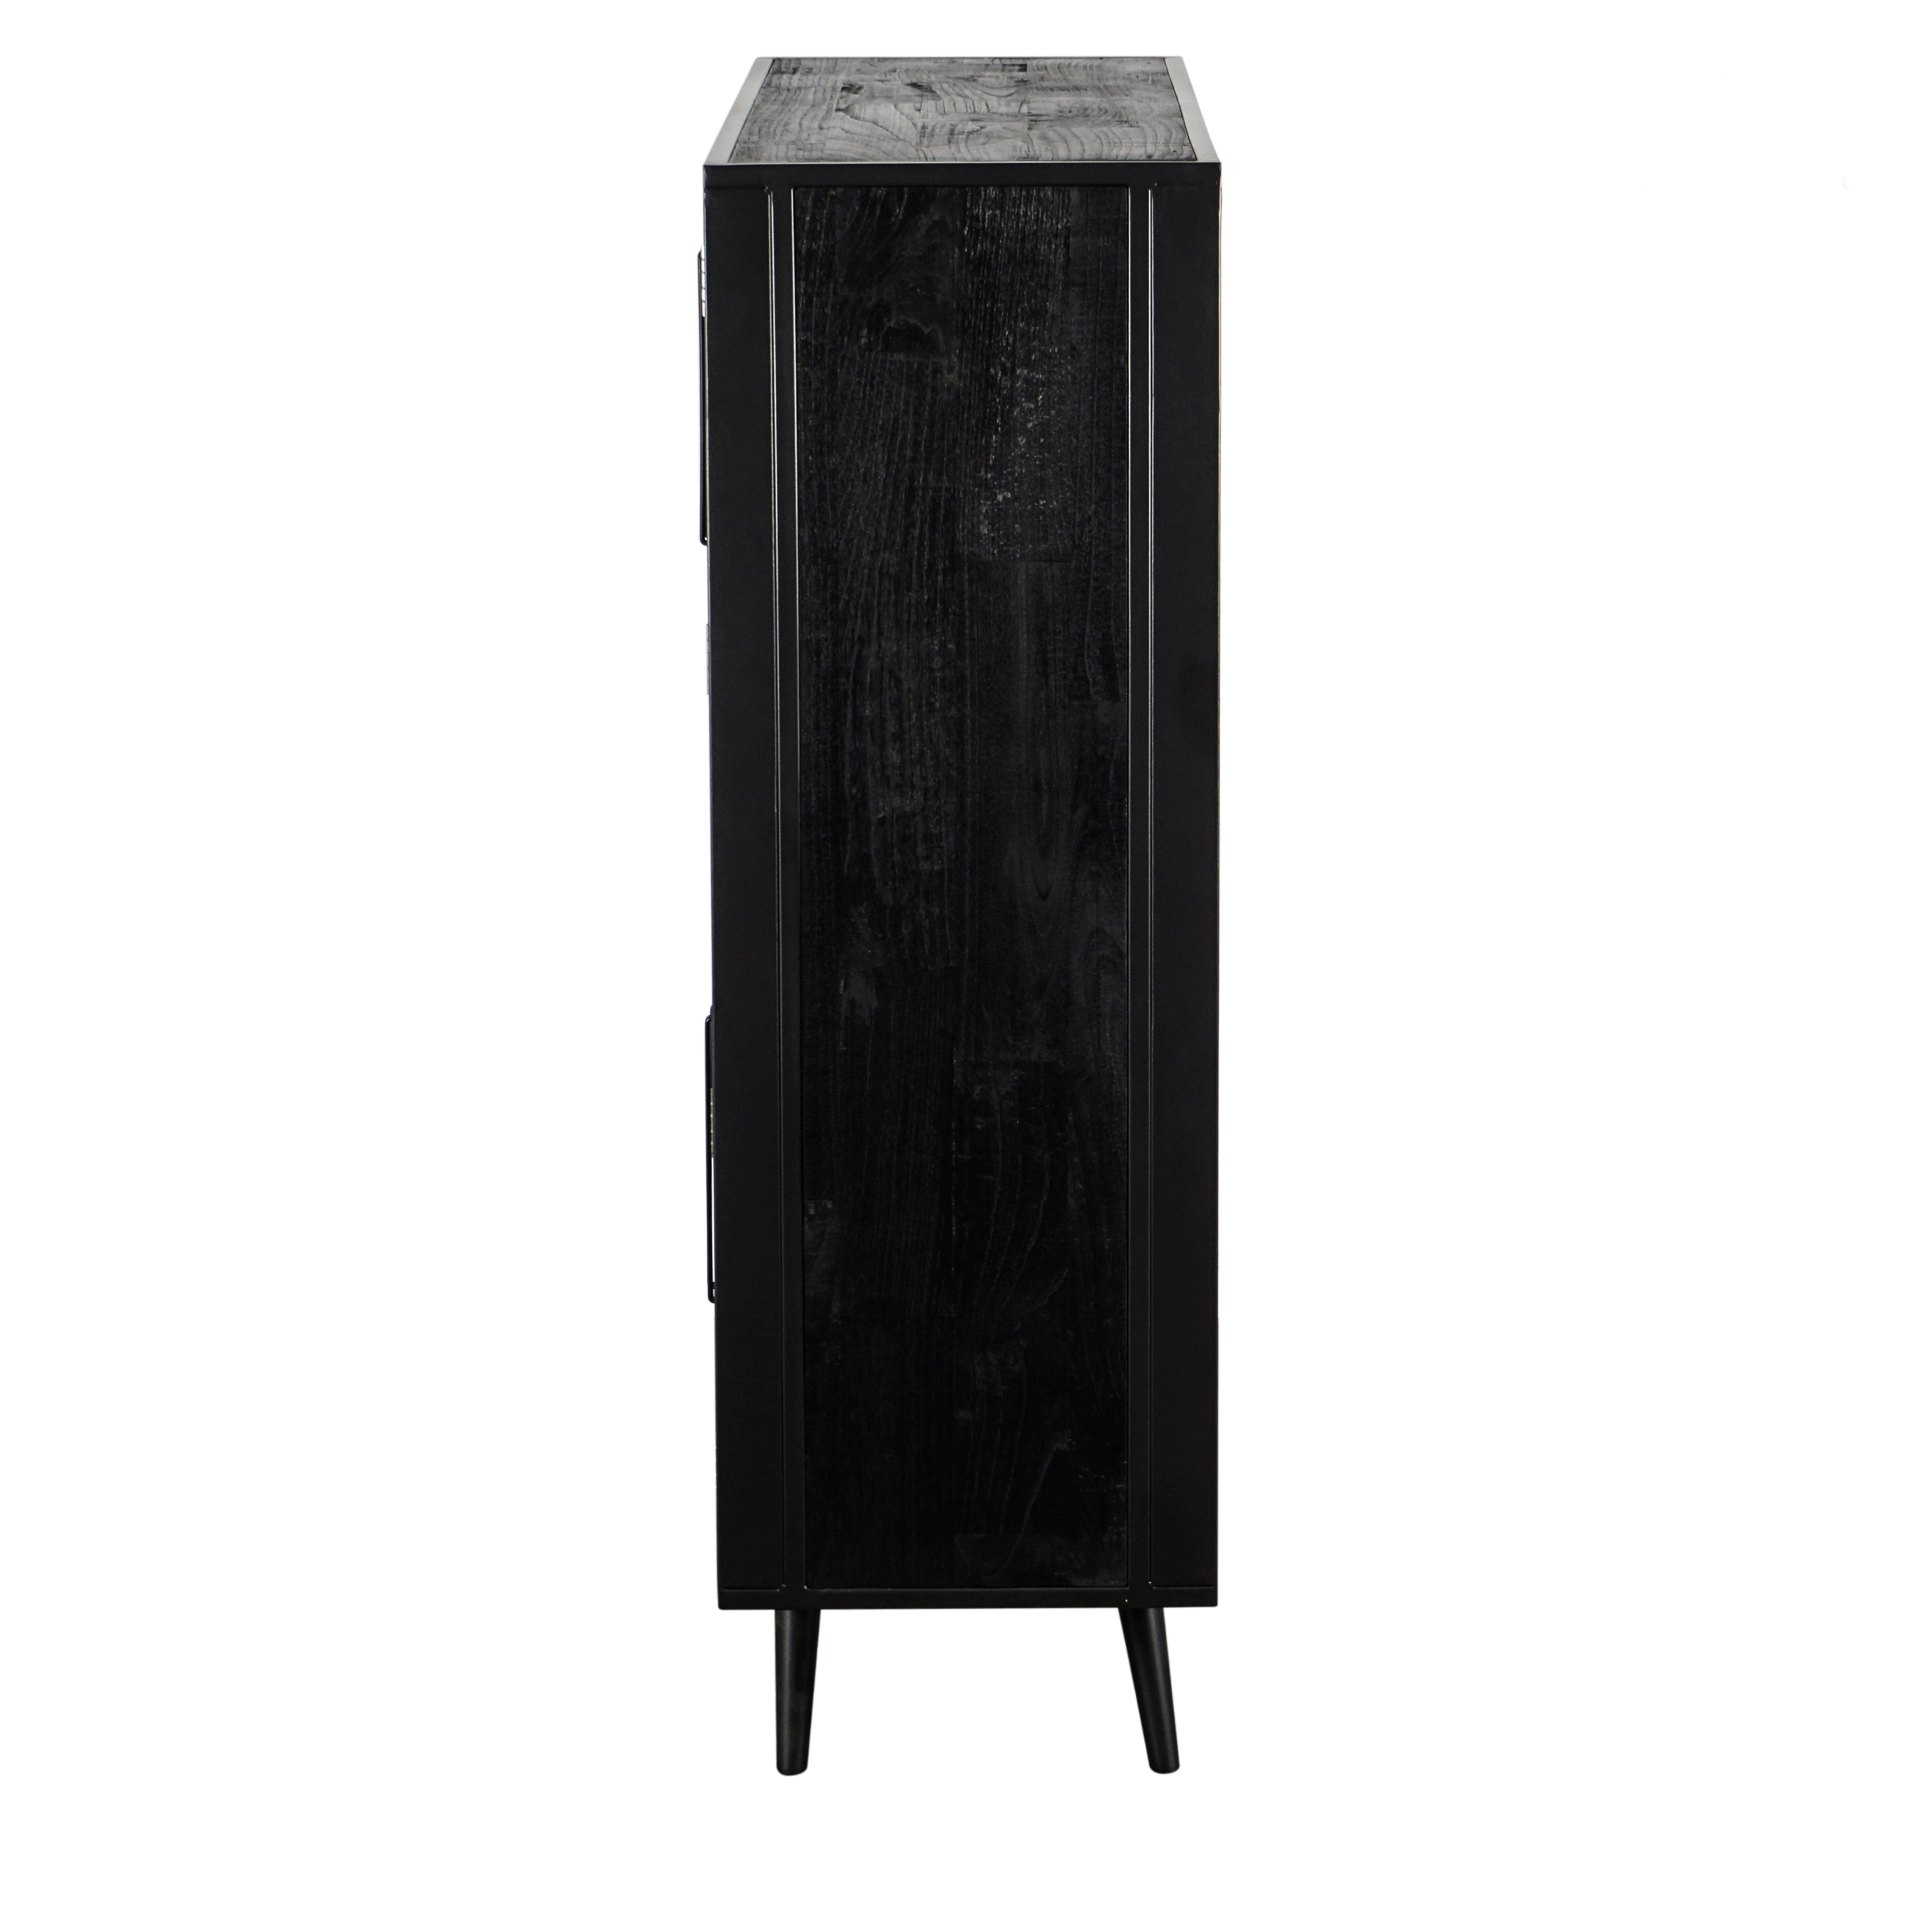 Das Highboard Nordic Mindi Rattan überzeugt mit seinem Industriellen Design. Gefertigt wurde es aus Rattan und Mindi Holz, welches einen schwarzen Farbton besitzt. Das Gestell ist aus Metall und hat eine schwarze Farbe. Das Highboard verfügt über vier Tür